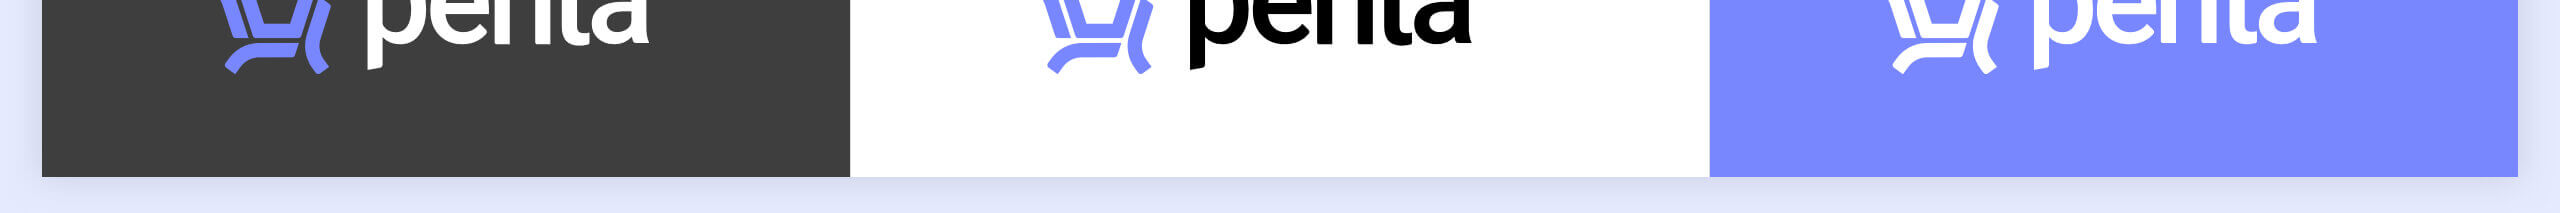 Penta5_logo_2